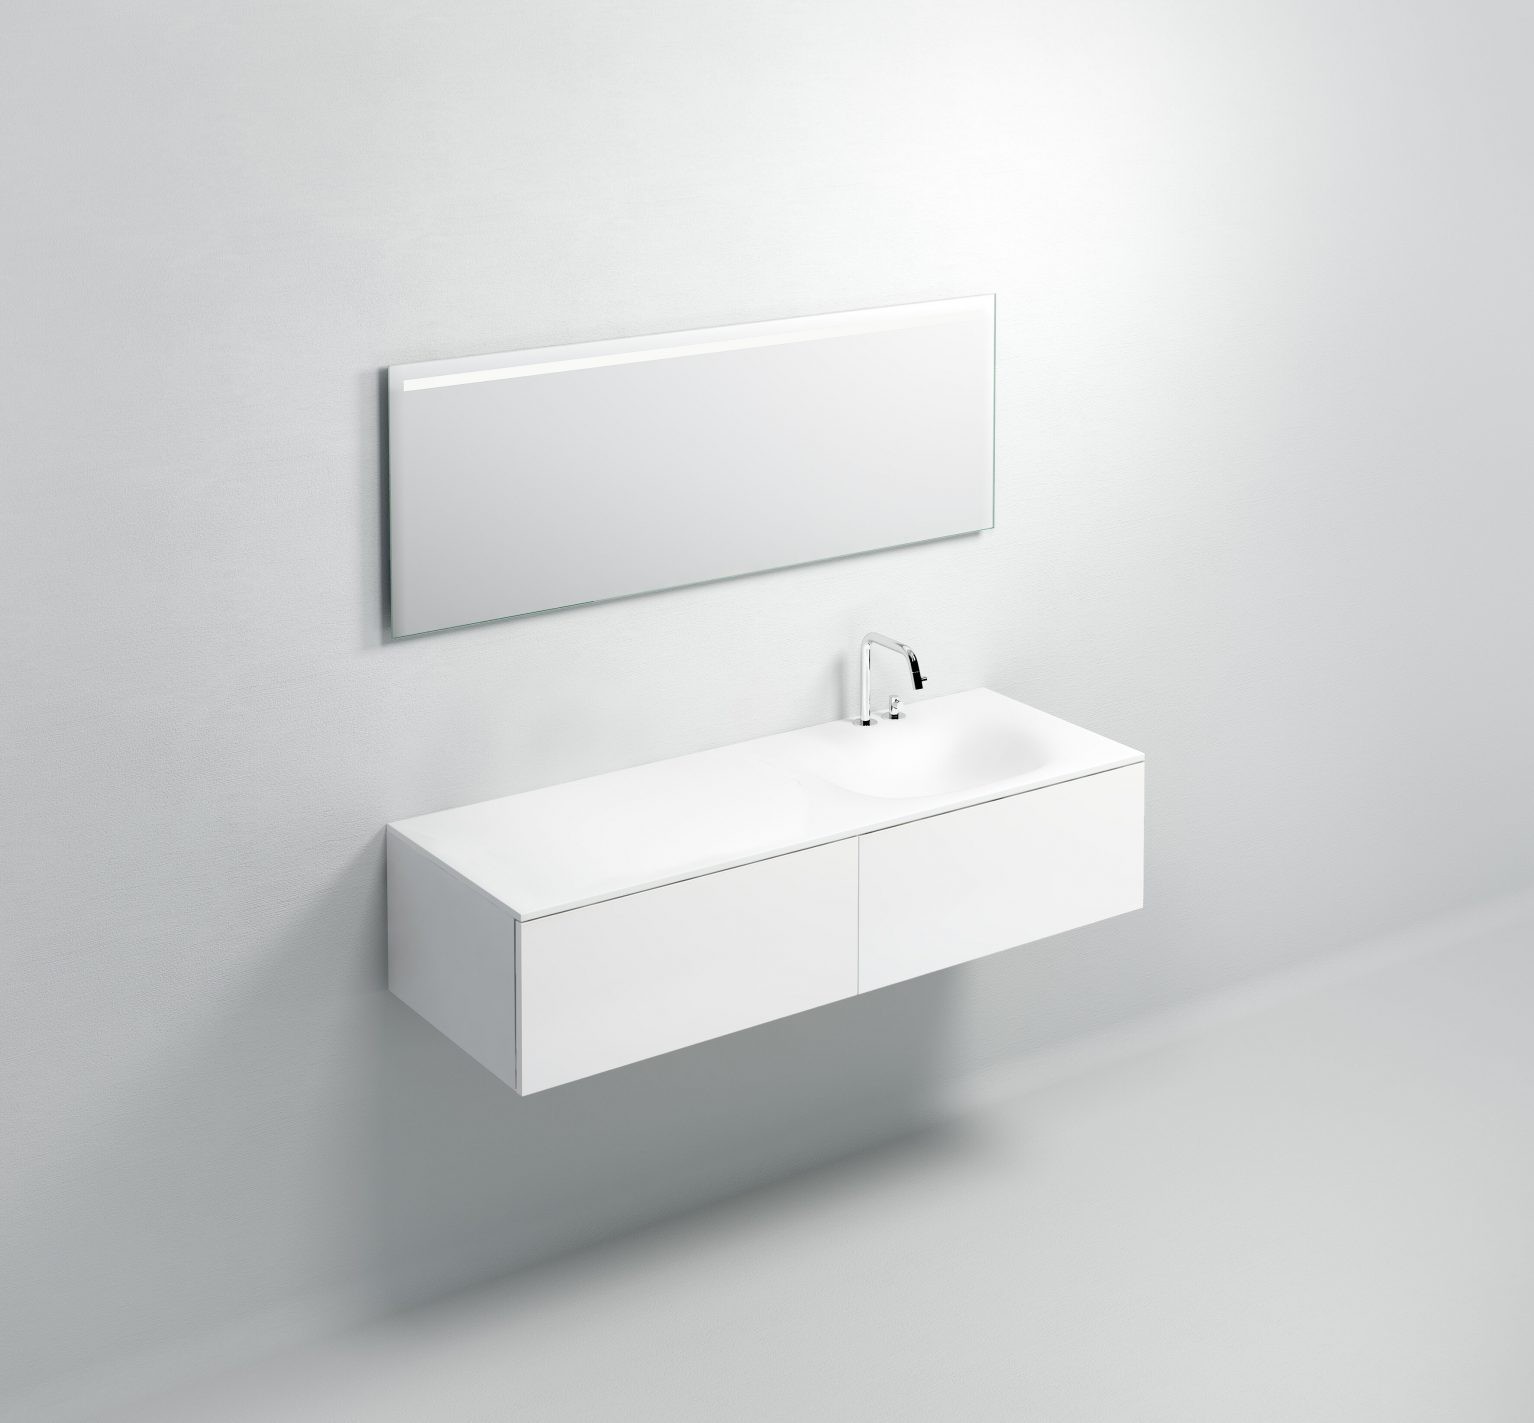 wastafel-wit-toilet-badkamer-luxe-sanitair-Hammock-clou-CL021307410R-aluite-140cm-wasbak-waskom-blad-kraangat-afvoer-waterstop-Sp-shadow-70-70